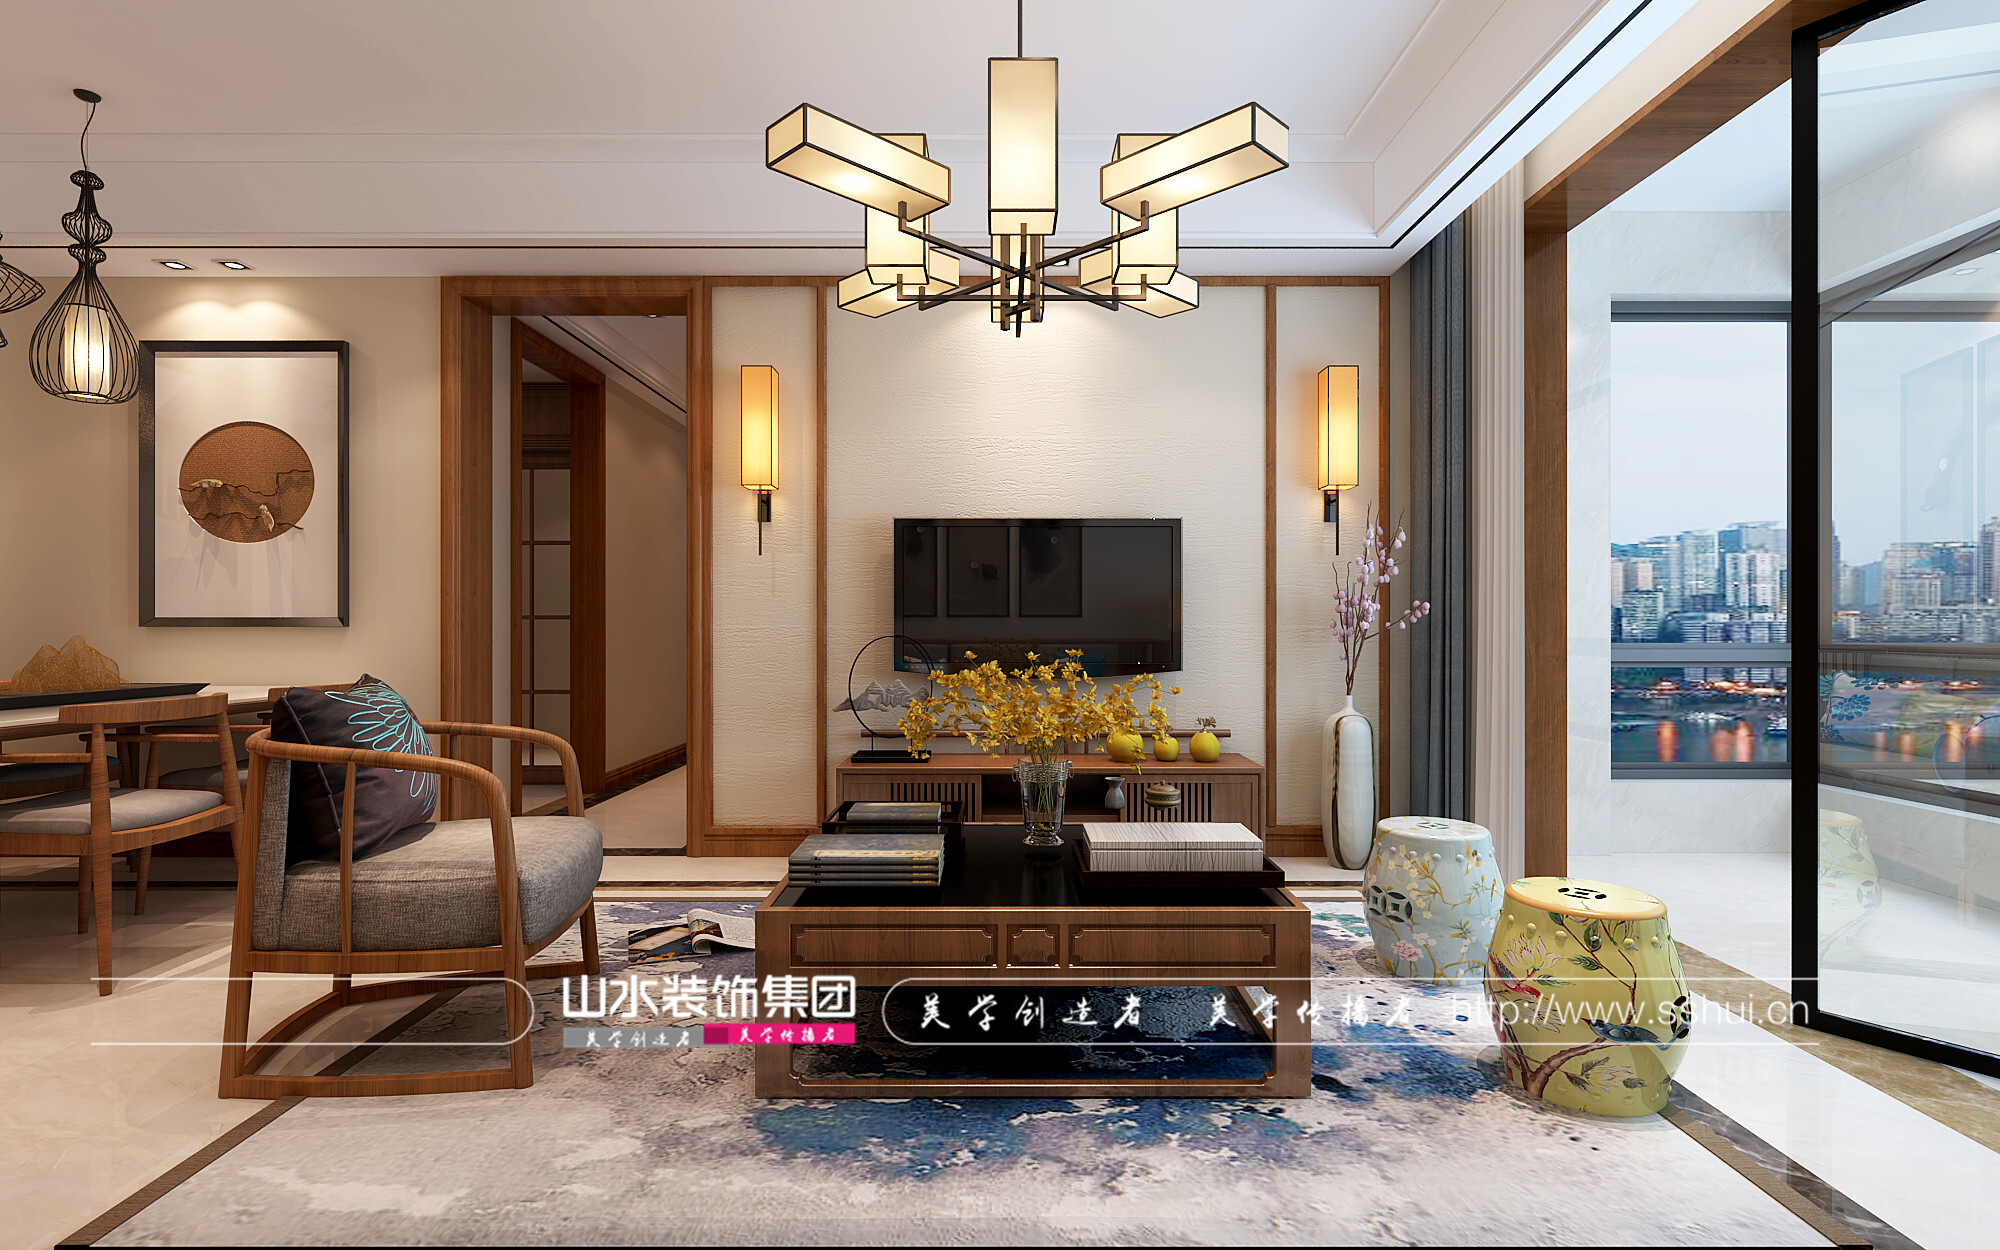 新中式风格客厅装修效果图展示